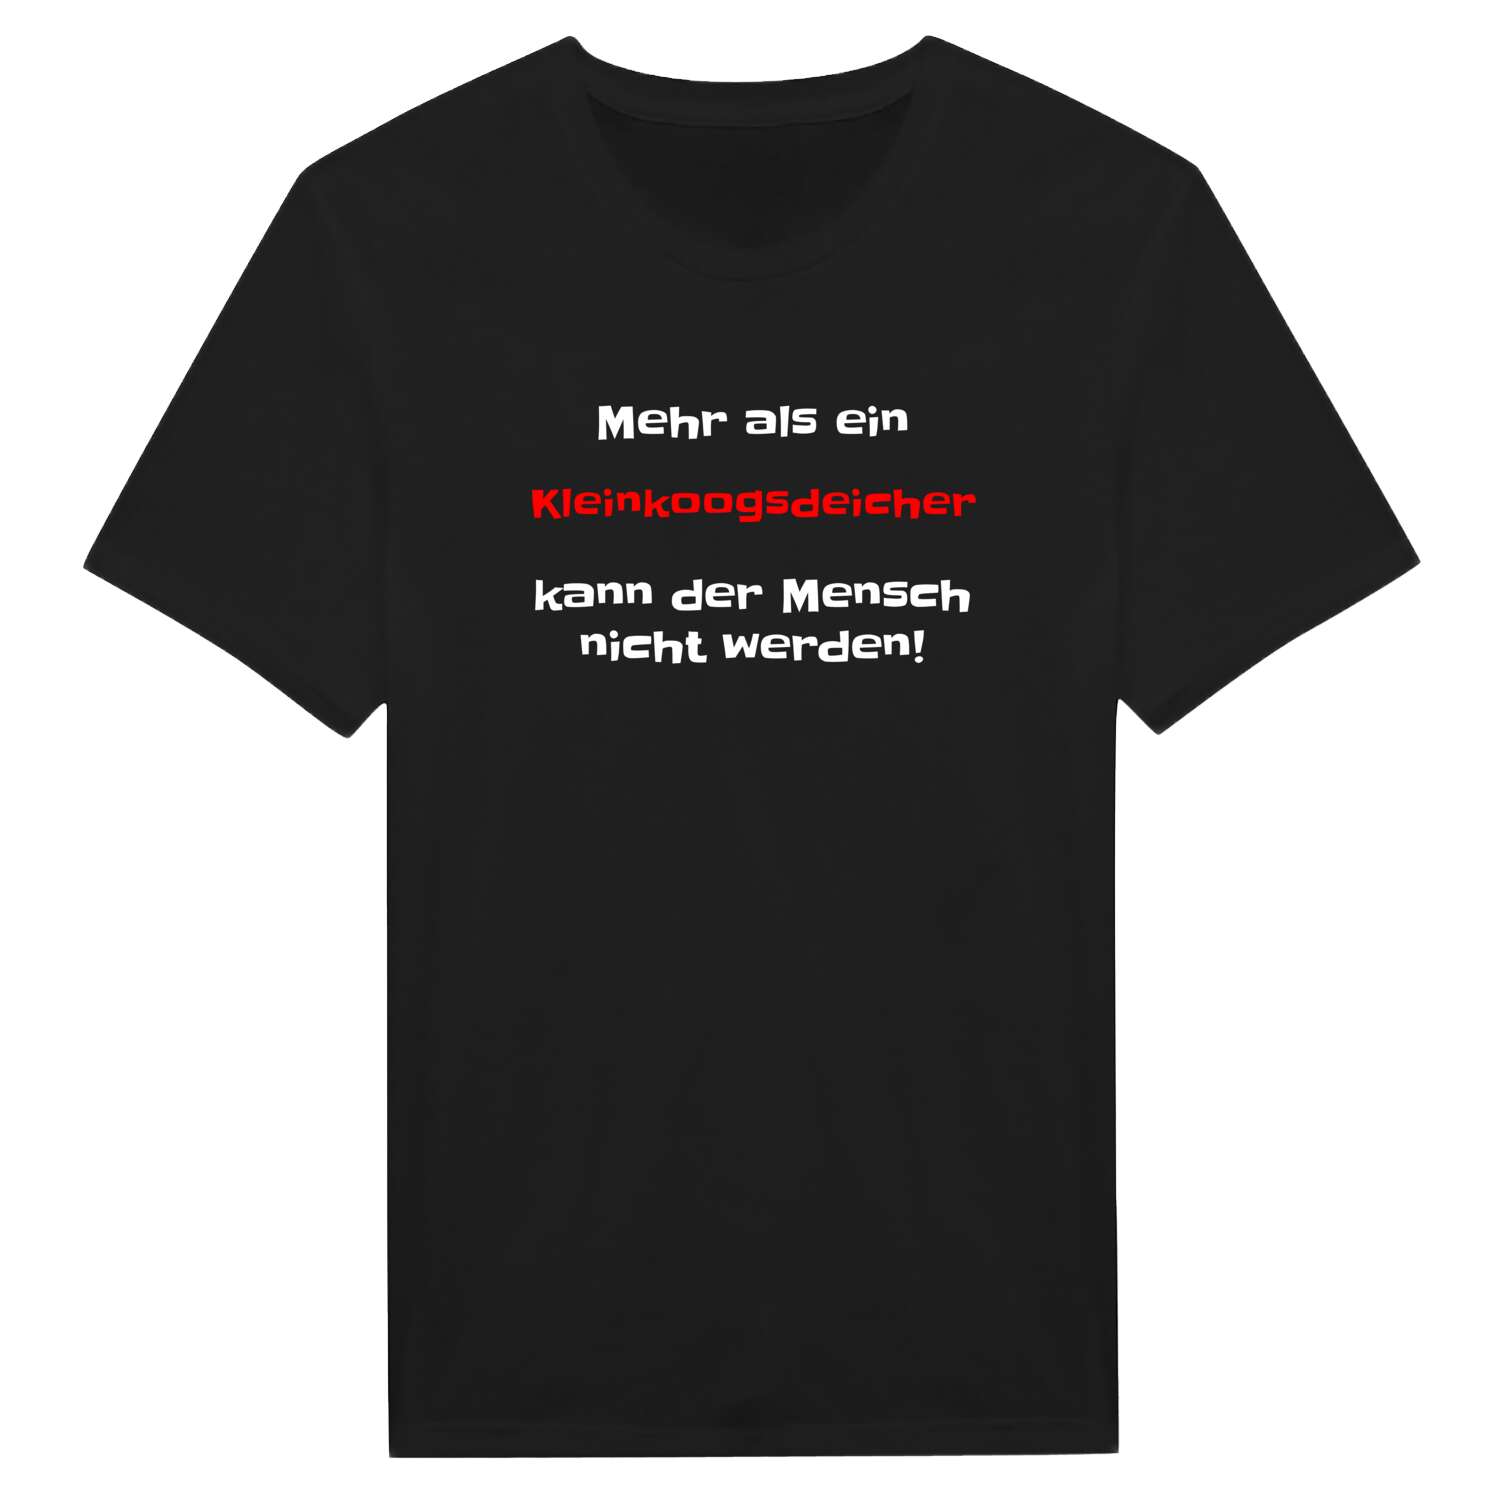 Kleinkoogsdeich T-Shirt »Mehr als ein«